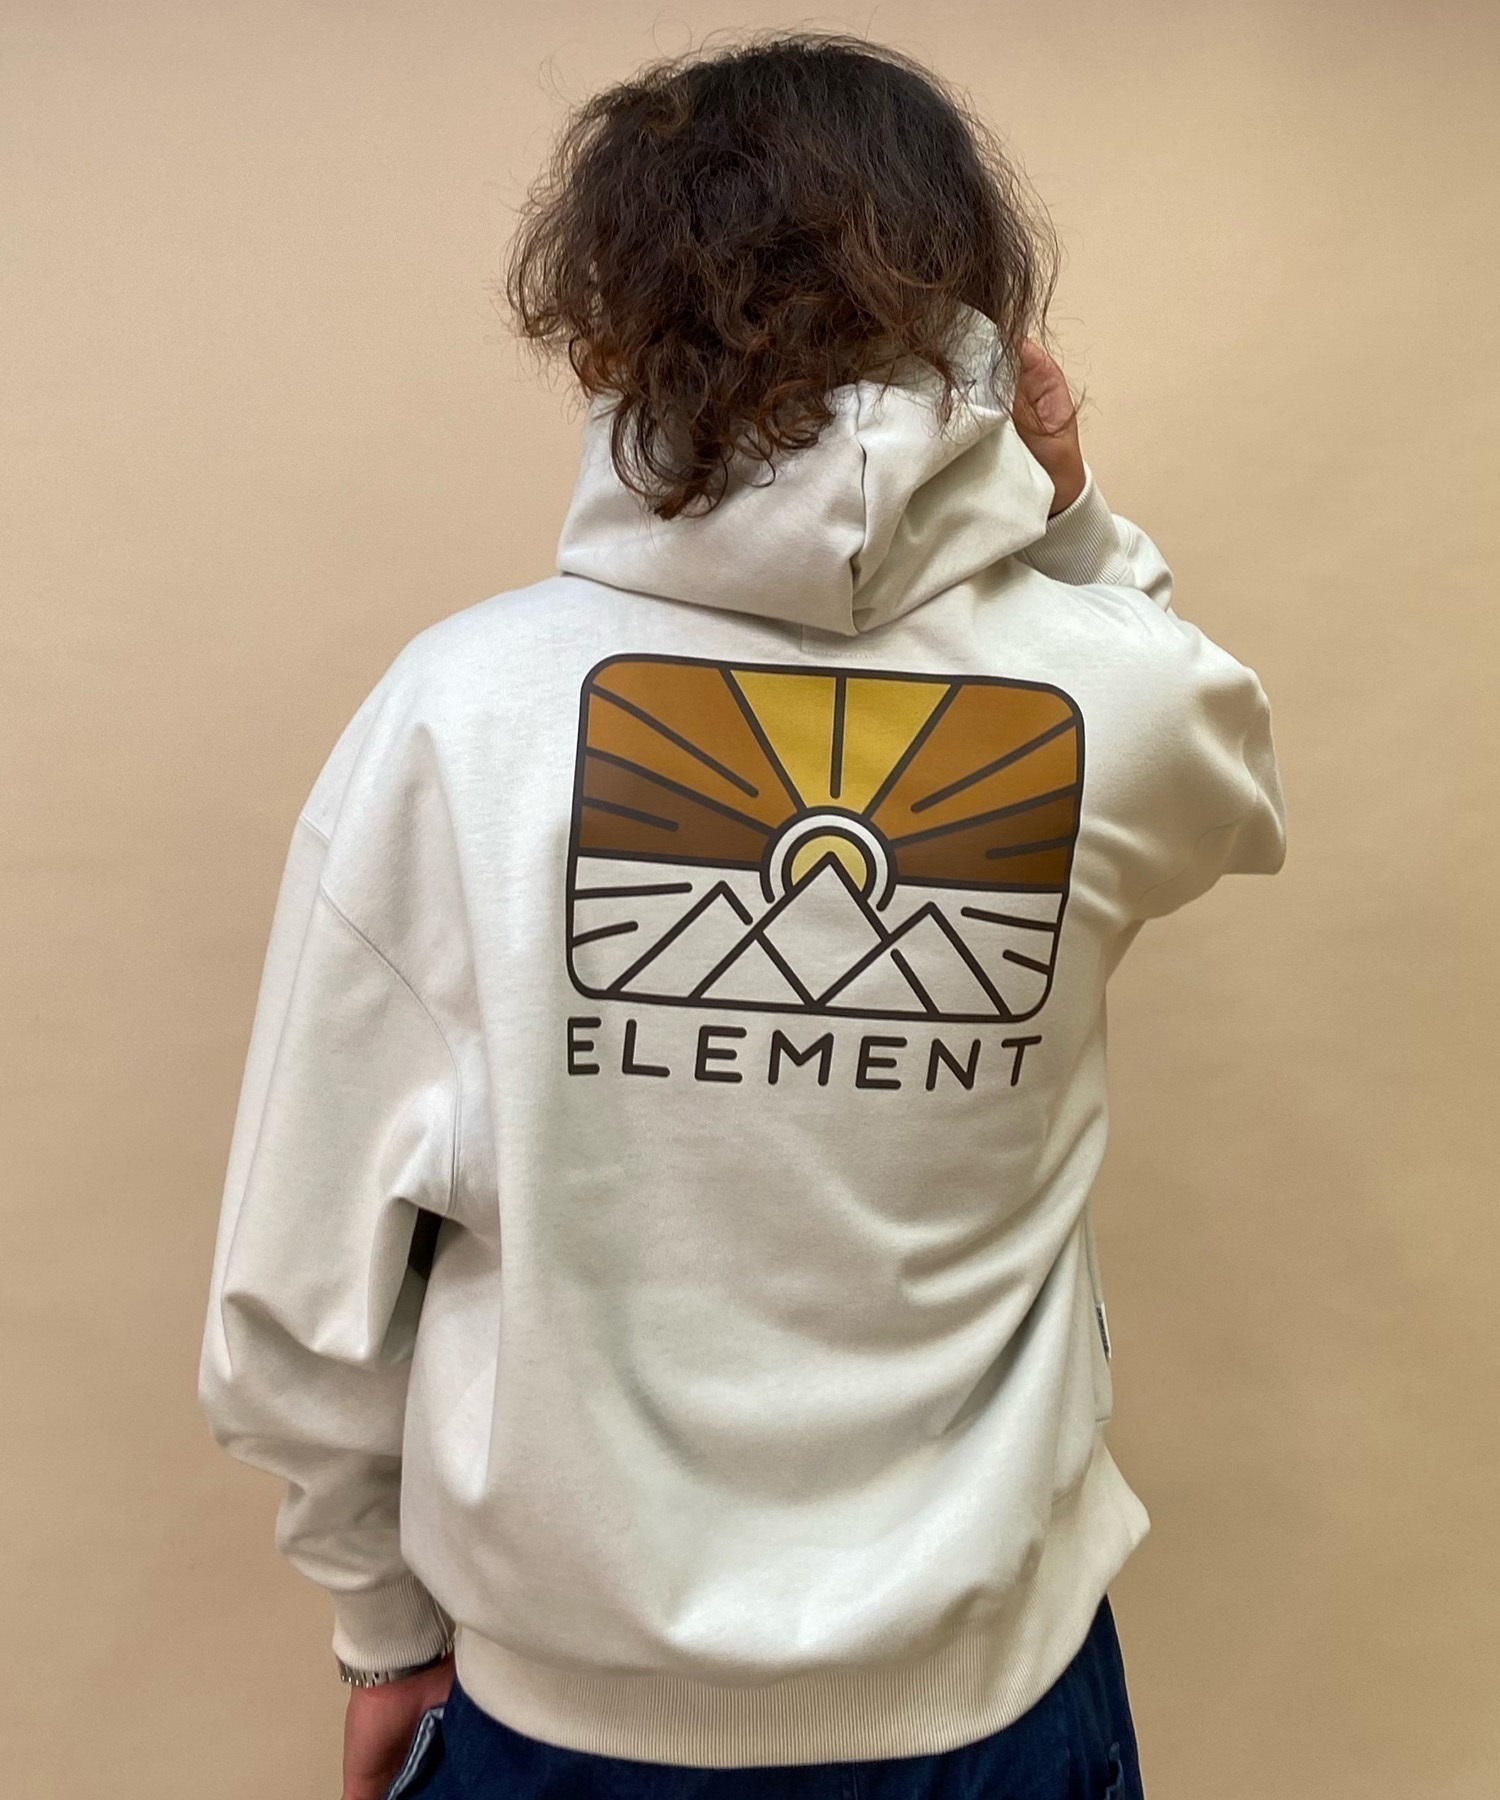 ELEMENT/エレメント RIZE HOOD WR メンズ パーカー プルオーバー